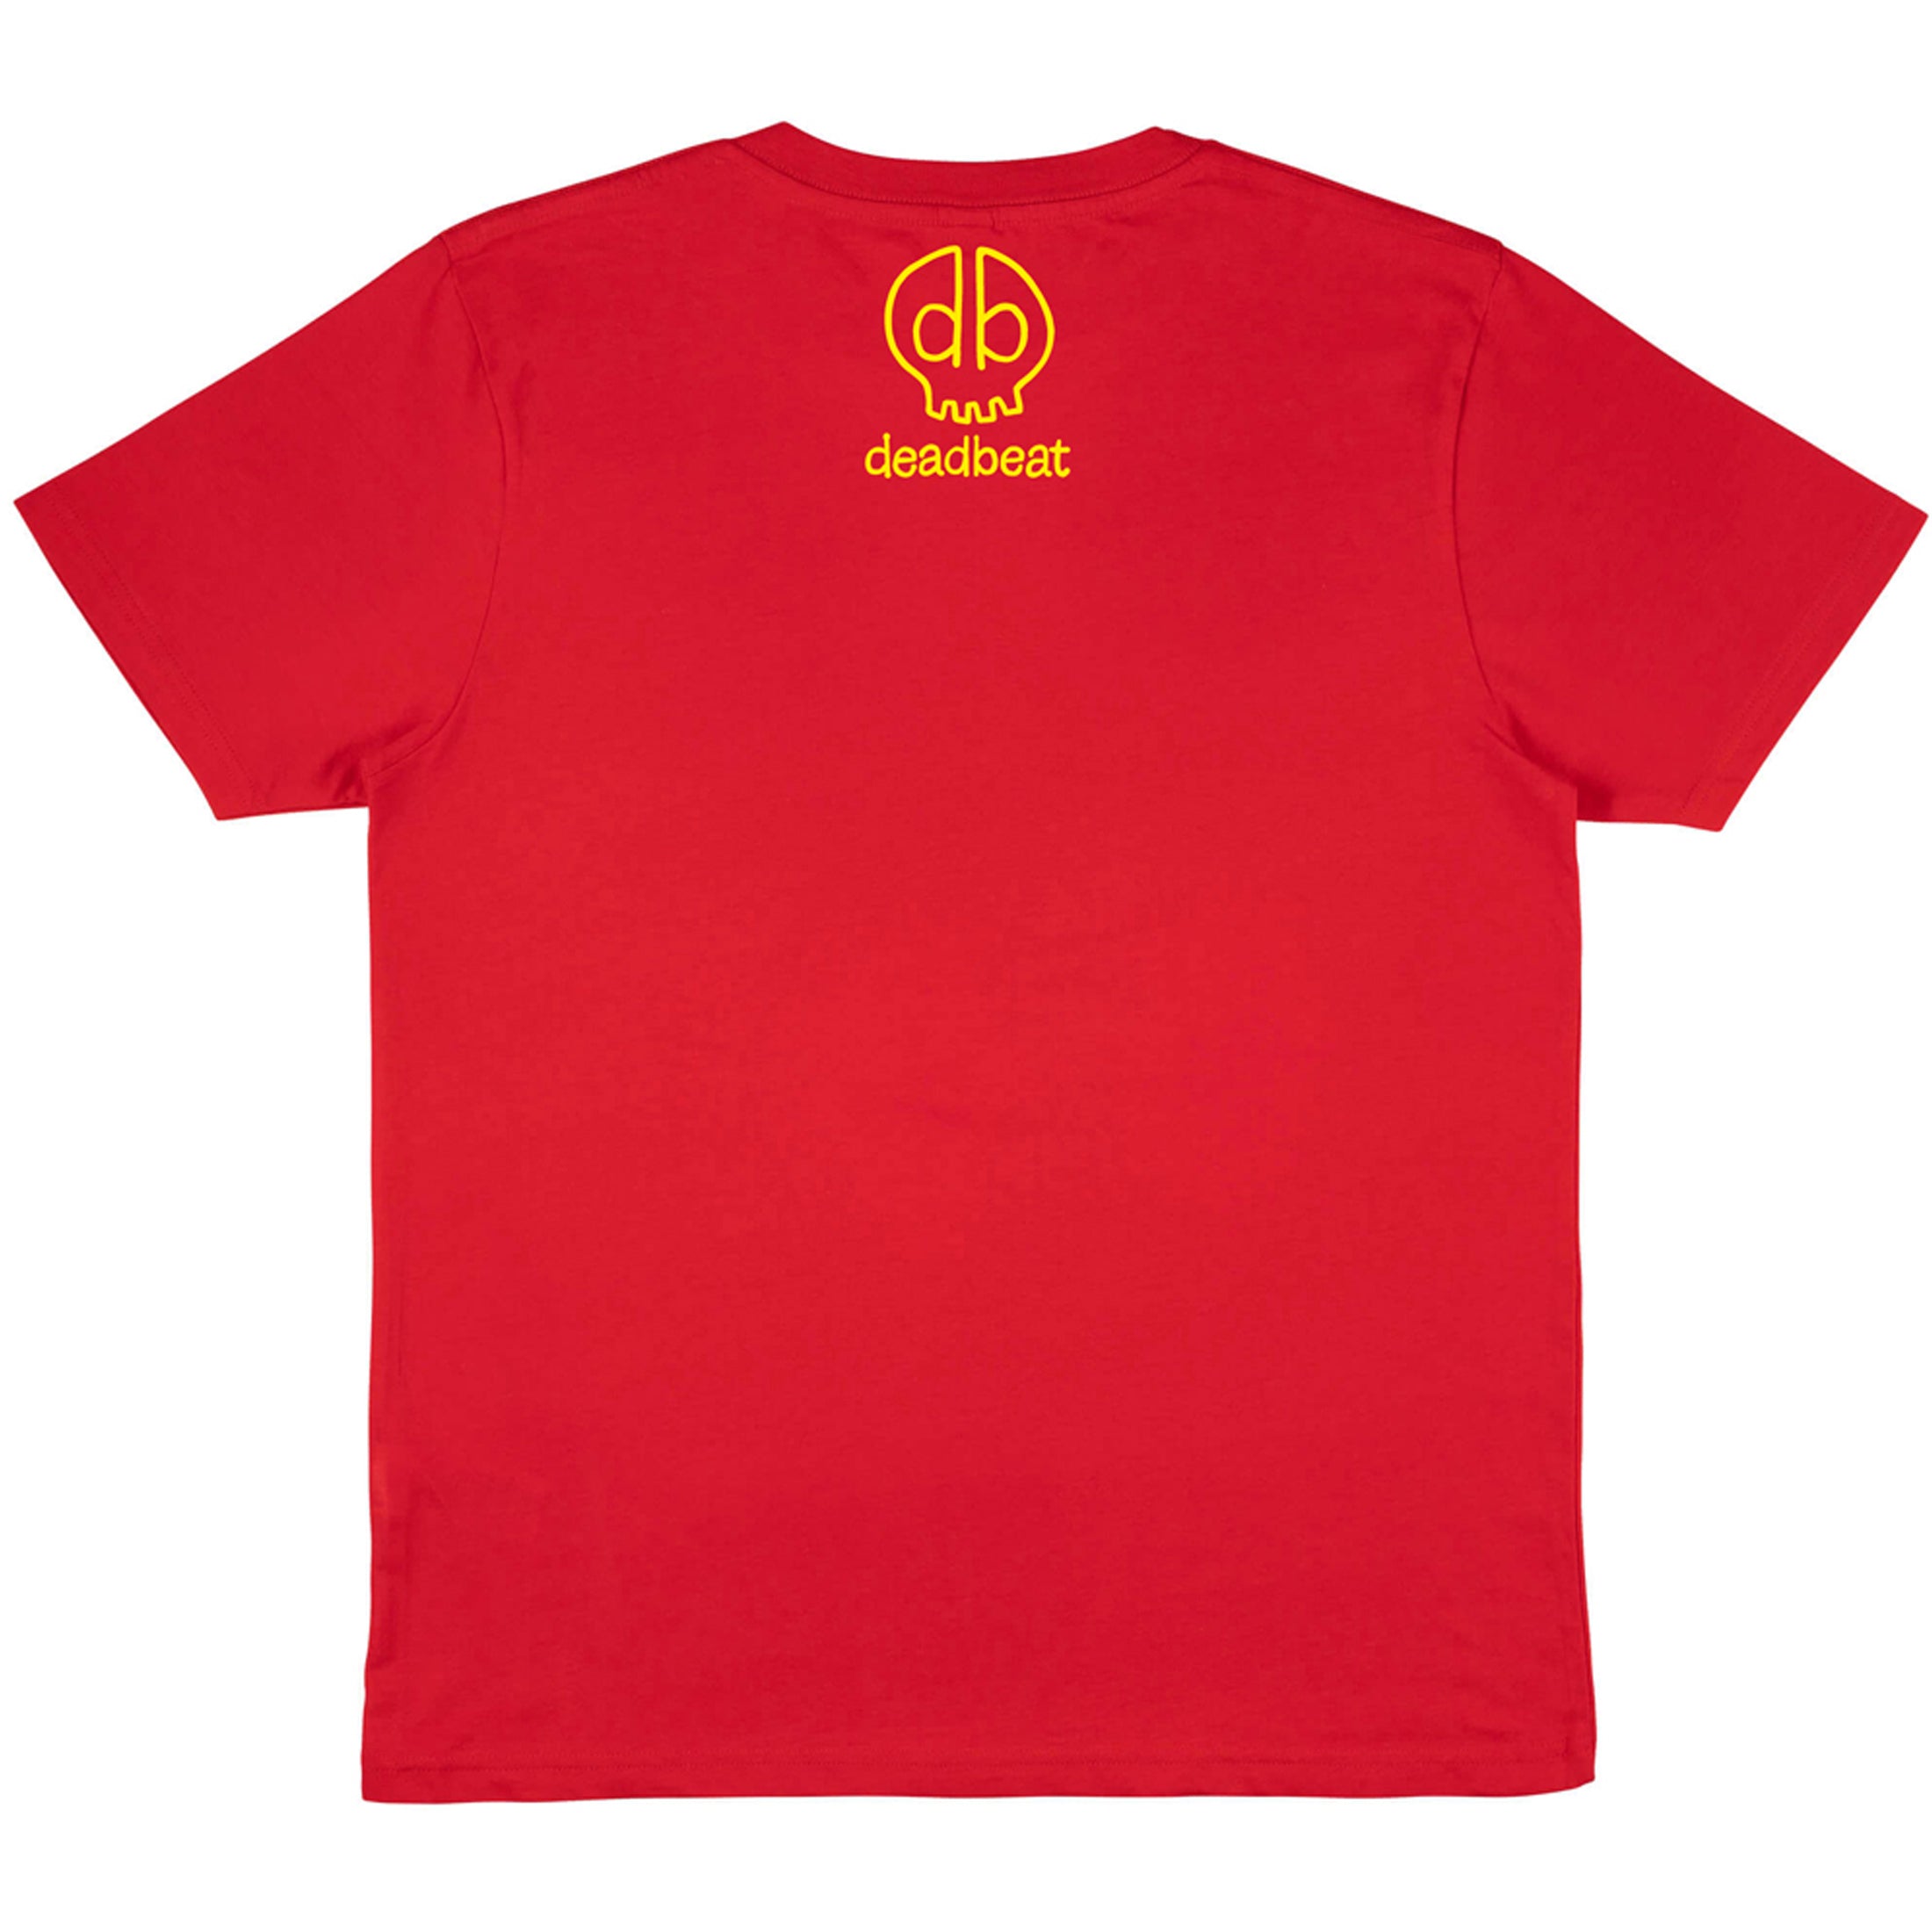 Red Lucky Cat T-Shirt  by db deadbeat